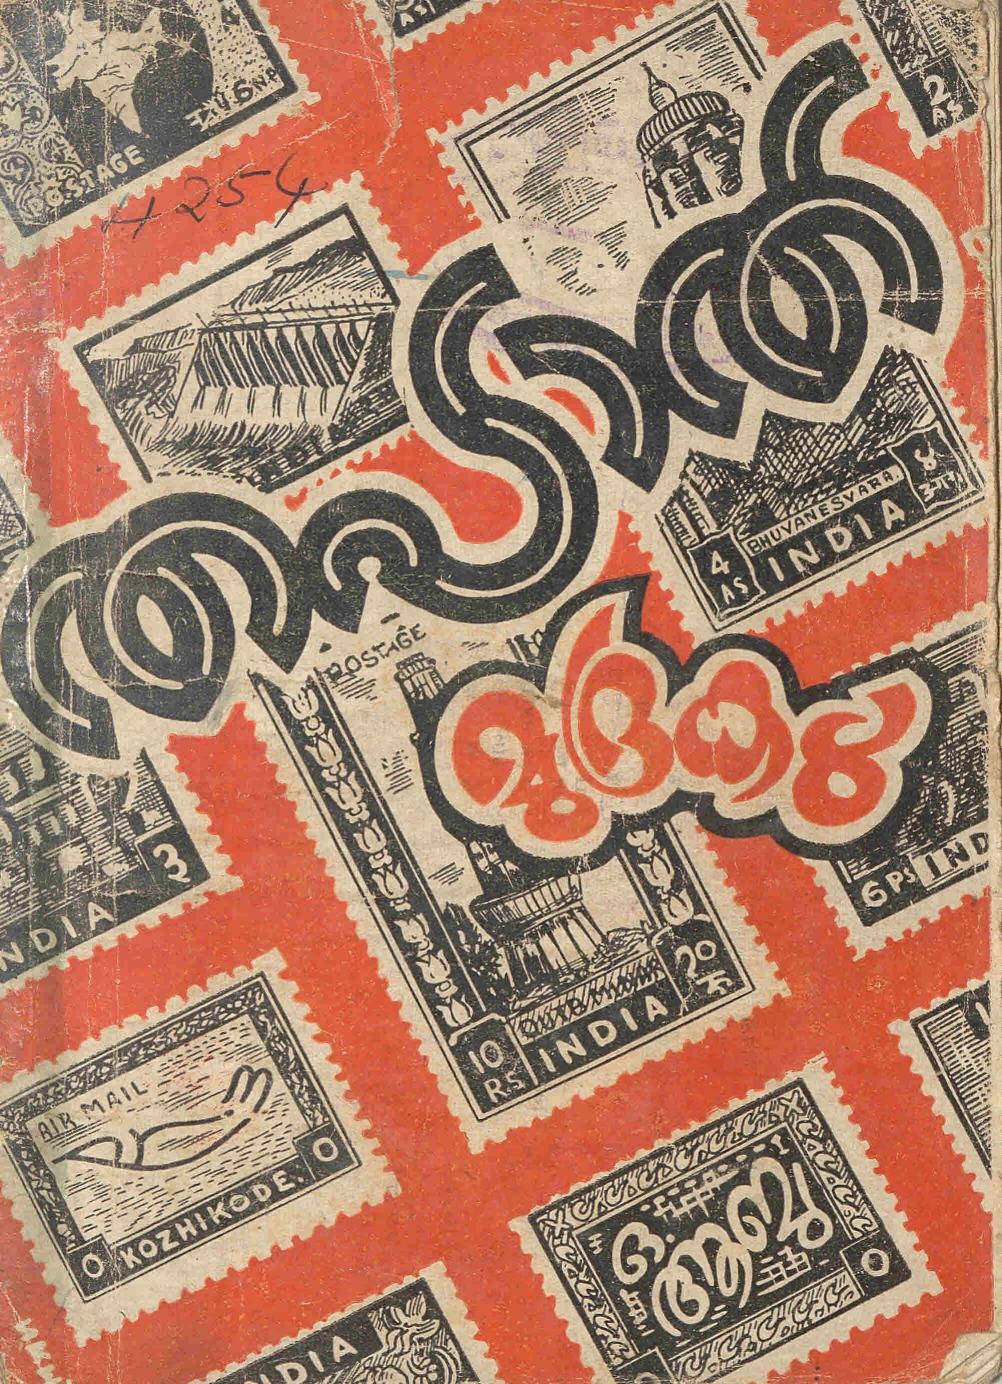  1957 - തപാൽ മുദ്രകൾ - ഒ. ആബു